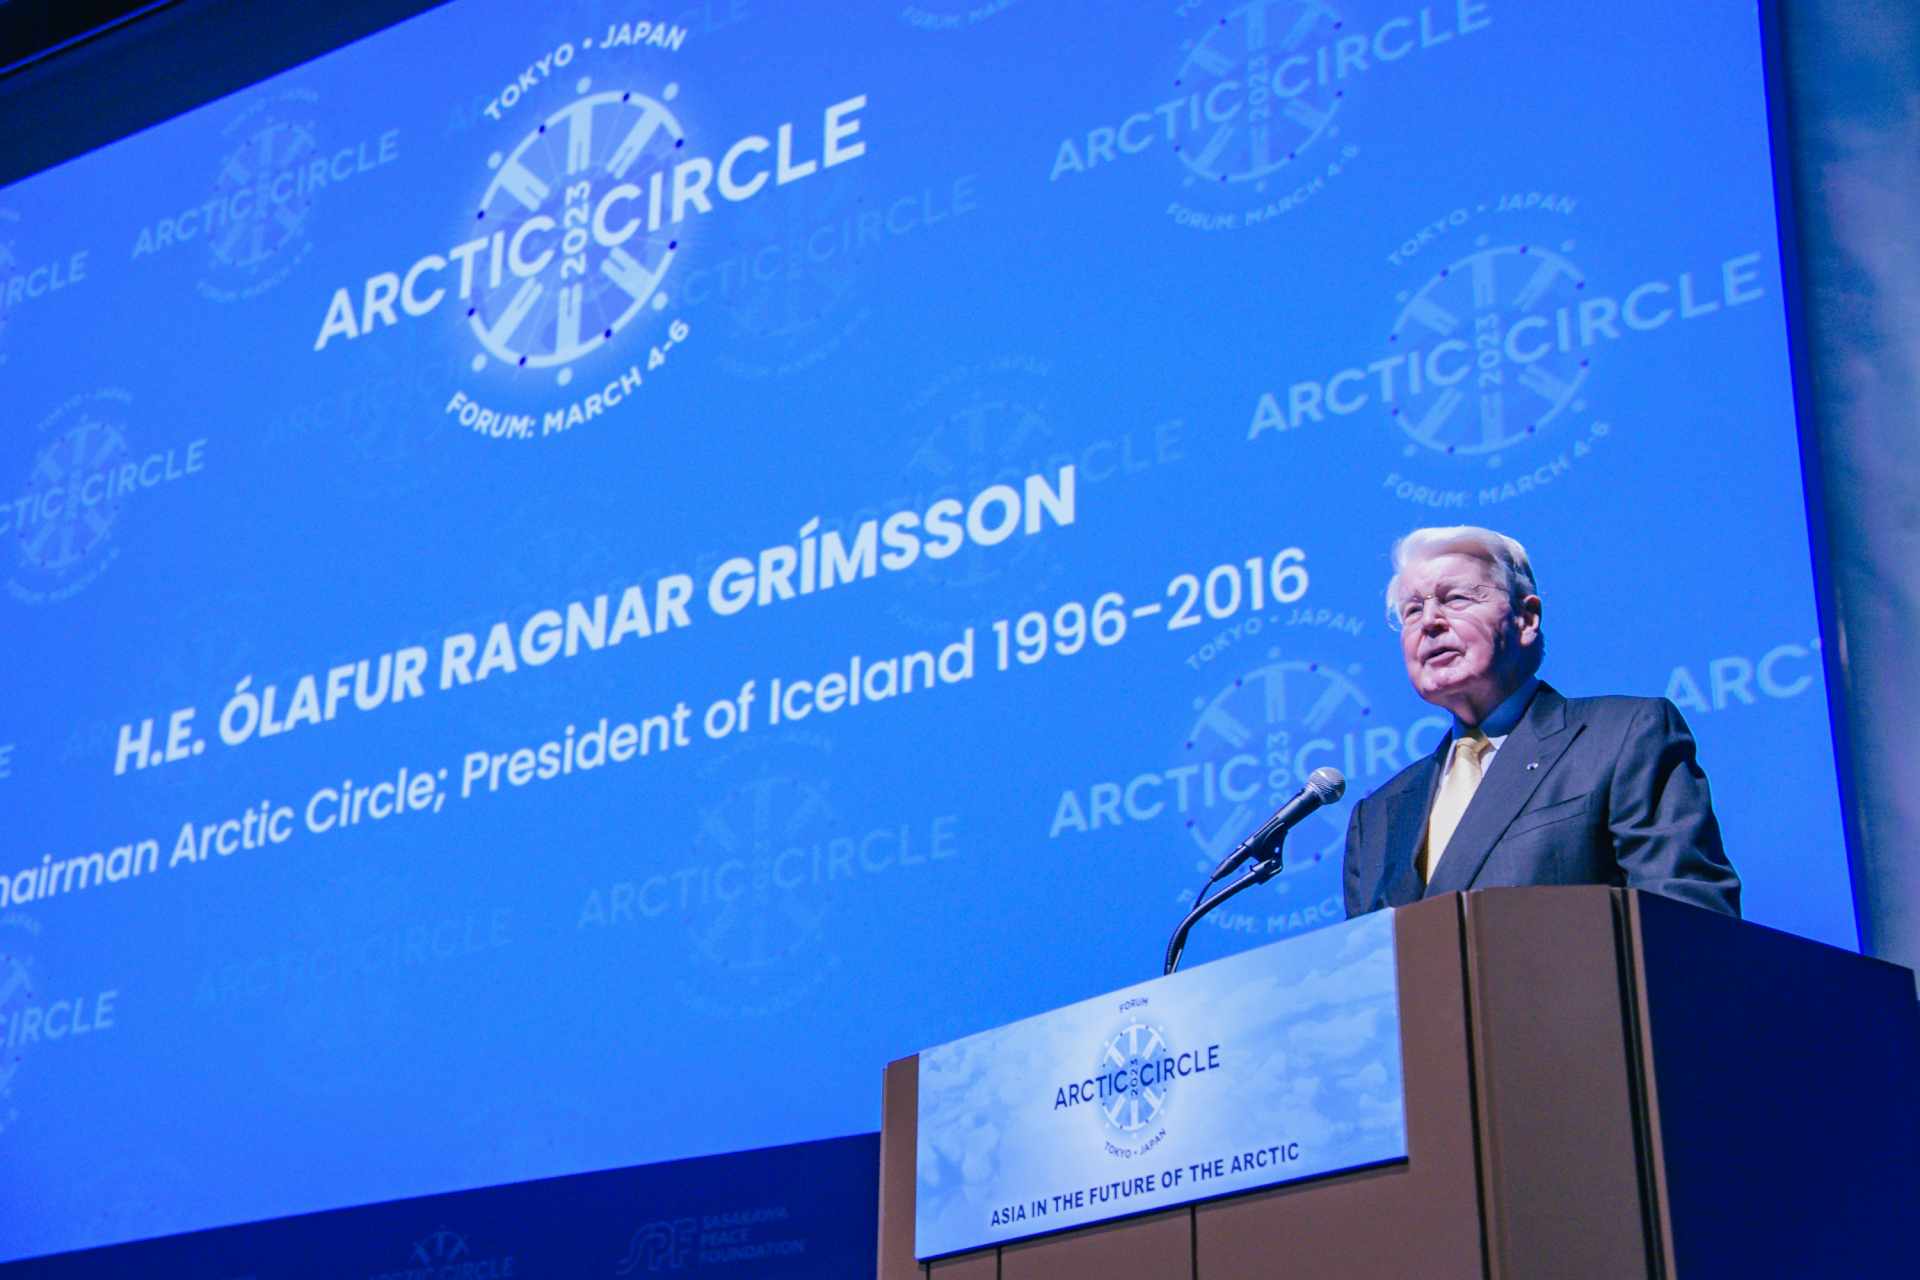 オーブニングセッションでスピーチするオラフル・ラグナル・グリムソン北極サークル議長